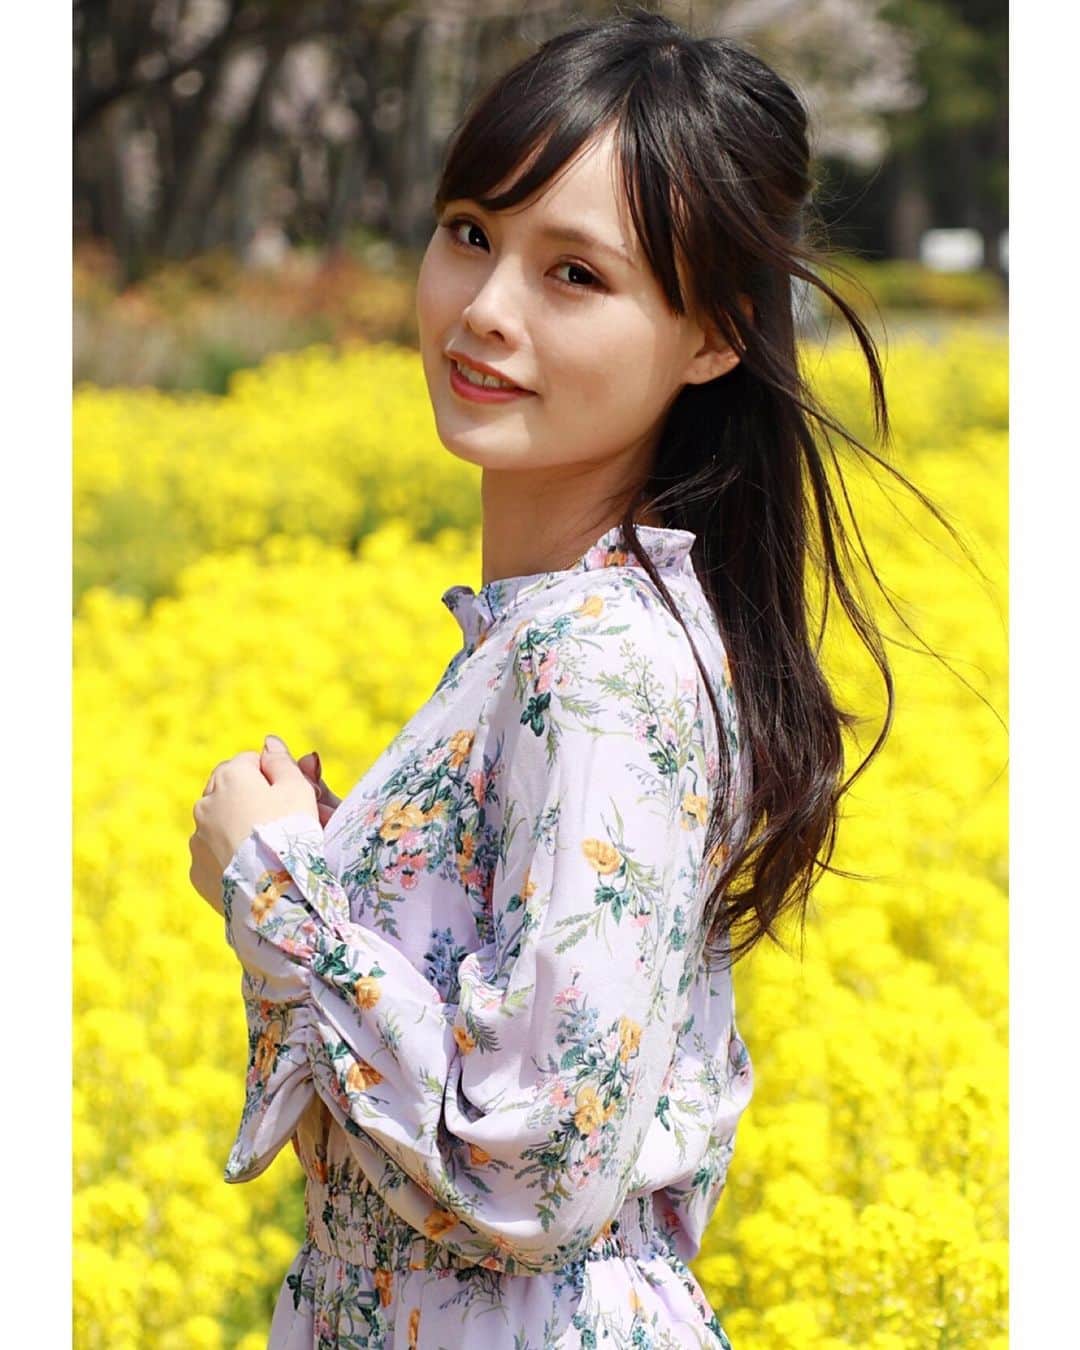 Tatsuzo Tangikuのインスタグラム：「本日の#モデル ⭐️ エヴァンゲリオンレーシング⭐️ #レースクイーン ⭐️ #藤谷梨砂子 ちゃん⭐️ 初撮影でした✨#菜の花 をバックにしたロケと#スタジオ撮影 ⭐️ この日は日差しも強くて、暑かった(^◇^;) 梨砂子ちゃん⭐️は日本と台湾のハーフのモデル⭐️ スレンダーで、クールな表情がとても魅力的な女の子なのですが、敢えてロケは笑顔を選んでみました🎵 スタジオはクールな#写真 ⭐️ 笑顔だと、めっちゃ可愛いし💕 クールだとカッコ良いと思いませんか🎵 衣装のセンスもとても良かった🎵 #撮影 してて、とても満足でした🎵 5月18日の土曜日に大阪エモーション撮影会での出演がありますので、ご興味のある方は是非！梨砂子ちゃん⭐️に会いに行ってみてくださいね🎵 写真🤳以上に美しいモデルですから🎵 #ポートレート #ポートレートモデル #写真好きな人と繋がりたい #写真撮ってる人と繋がりたい #ファインダー越しの私の世界 #菜の花畑 #スレンダー #クールビューティー #可愛い  #エモーション撮影会 #ロキソマン （笑） スワイプしてね〜  #model #racequeen #cute #japanesegirl #portrait #portraitphotography」